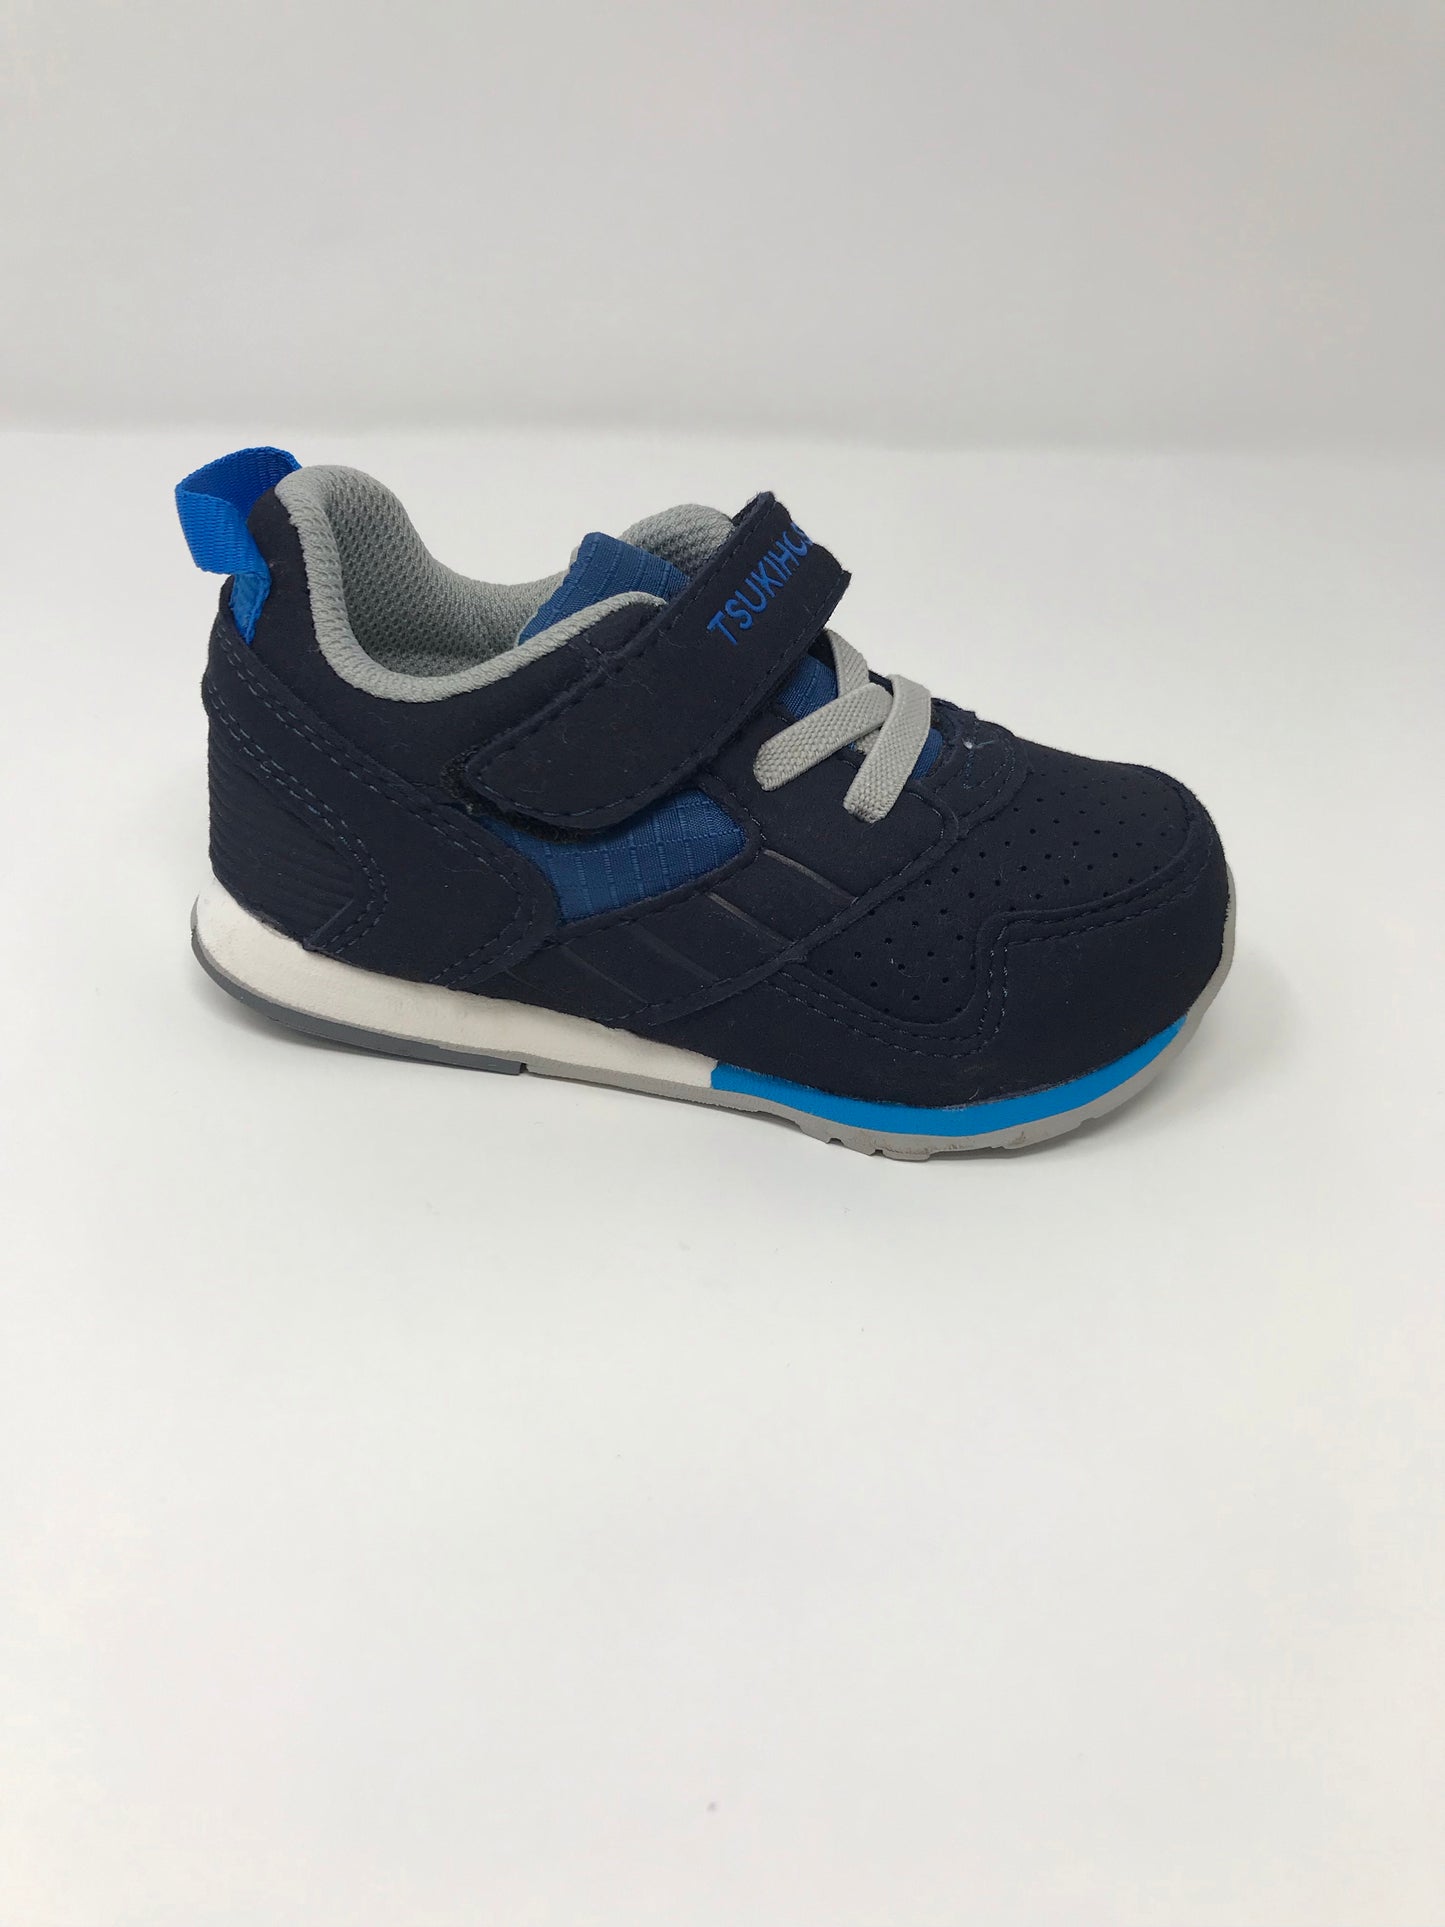 Navy/Blue Racer Shoes Tsukihoshi   